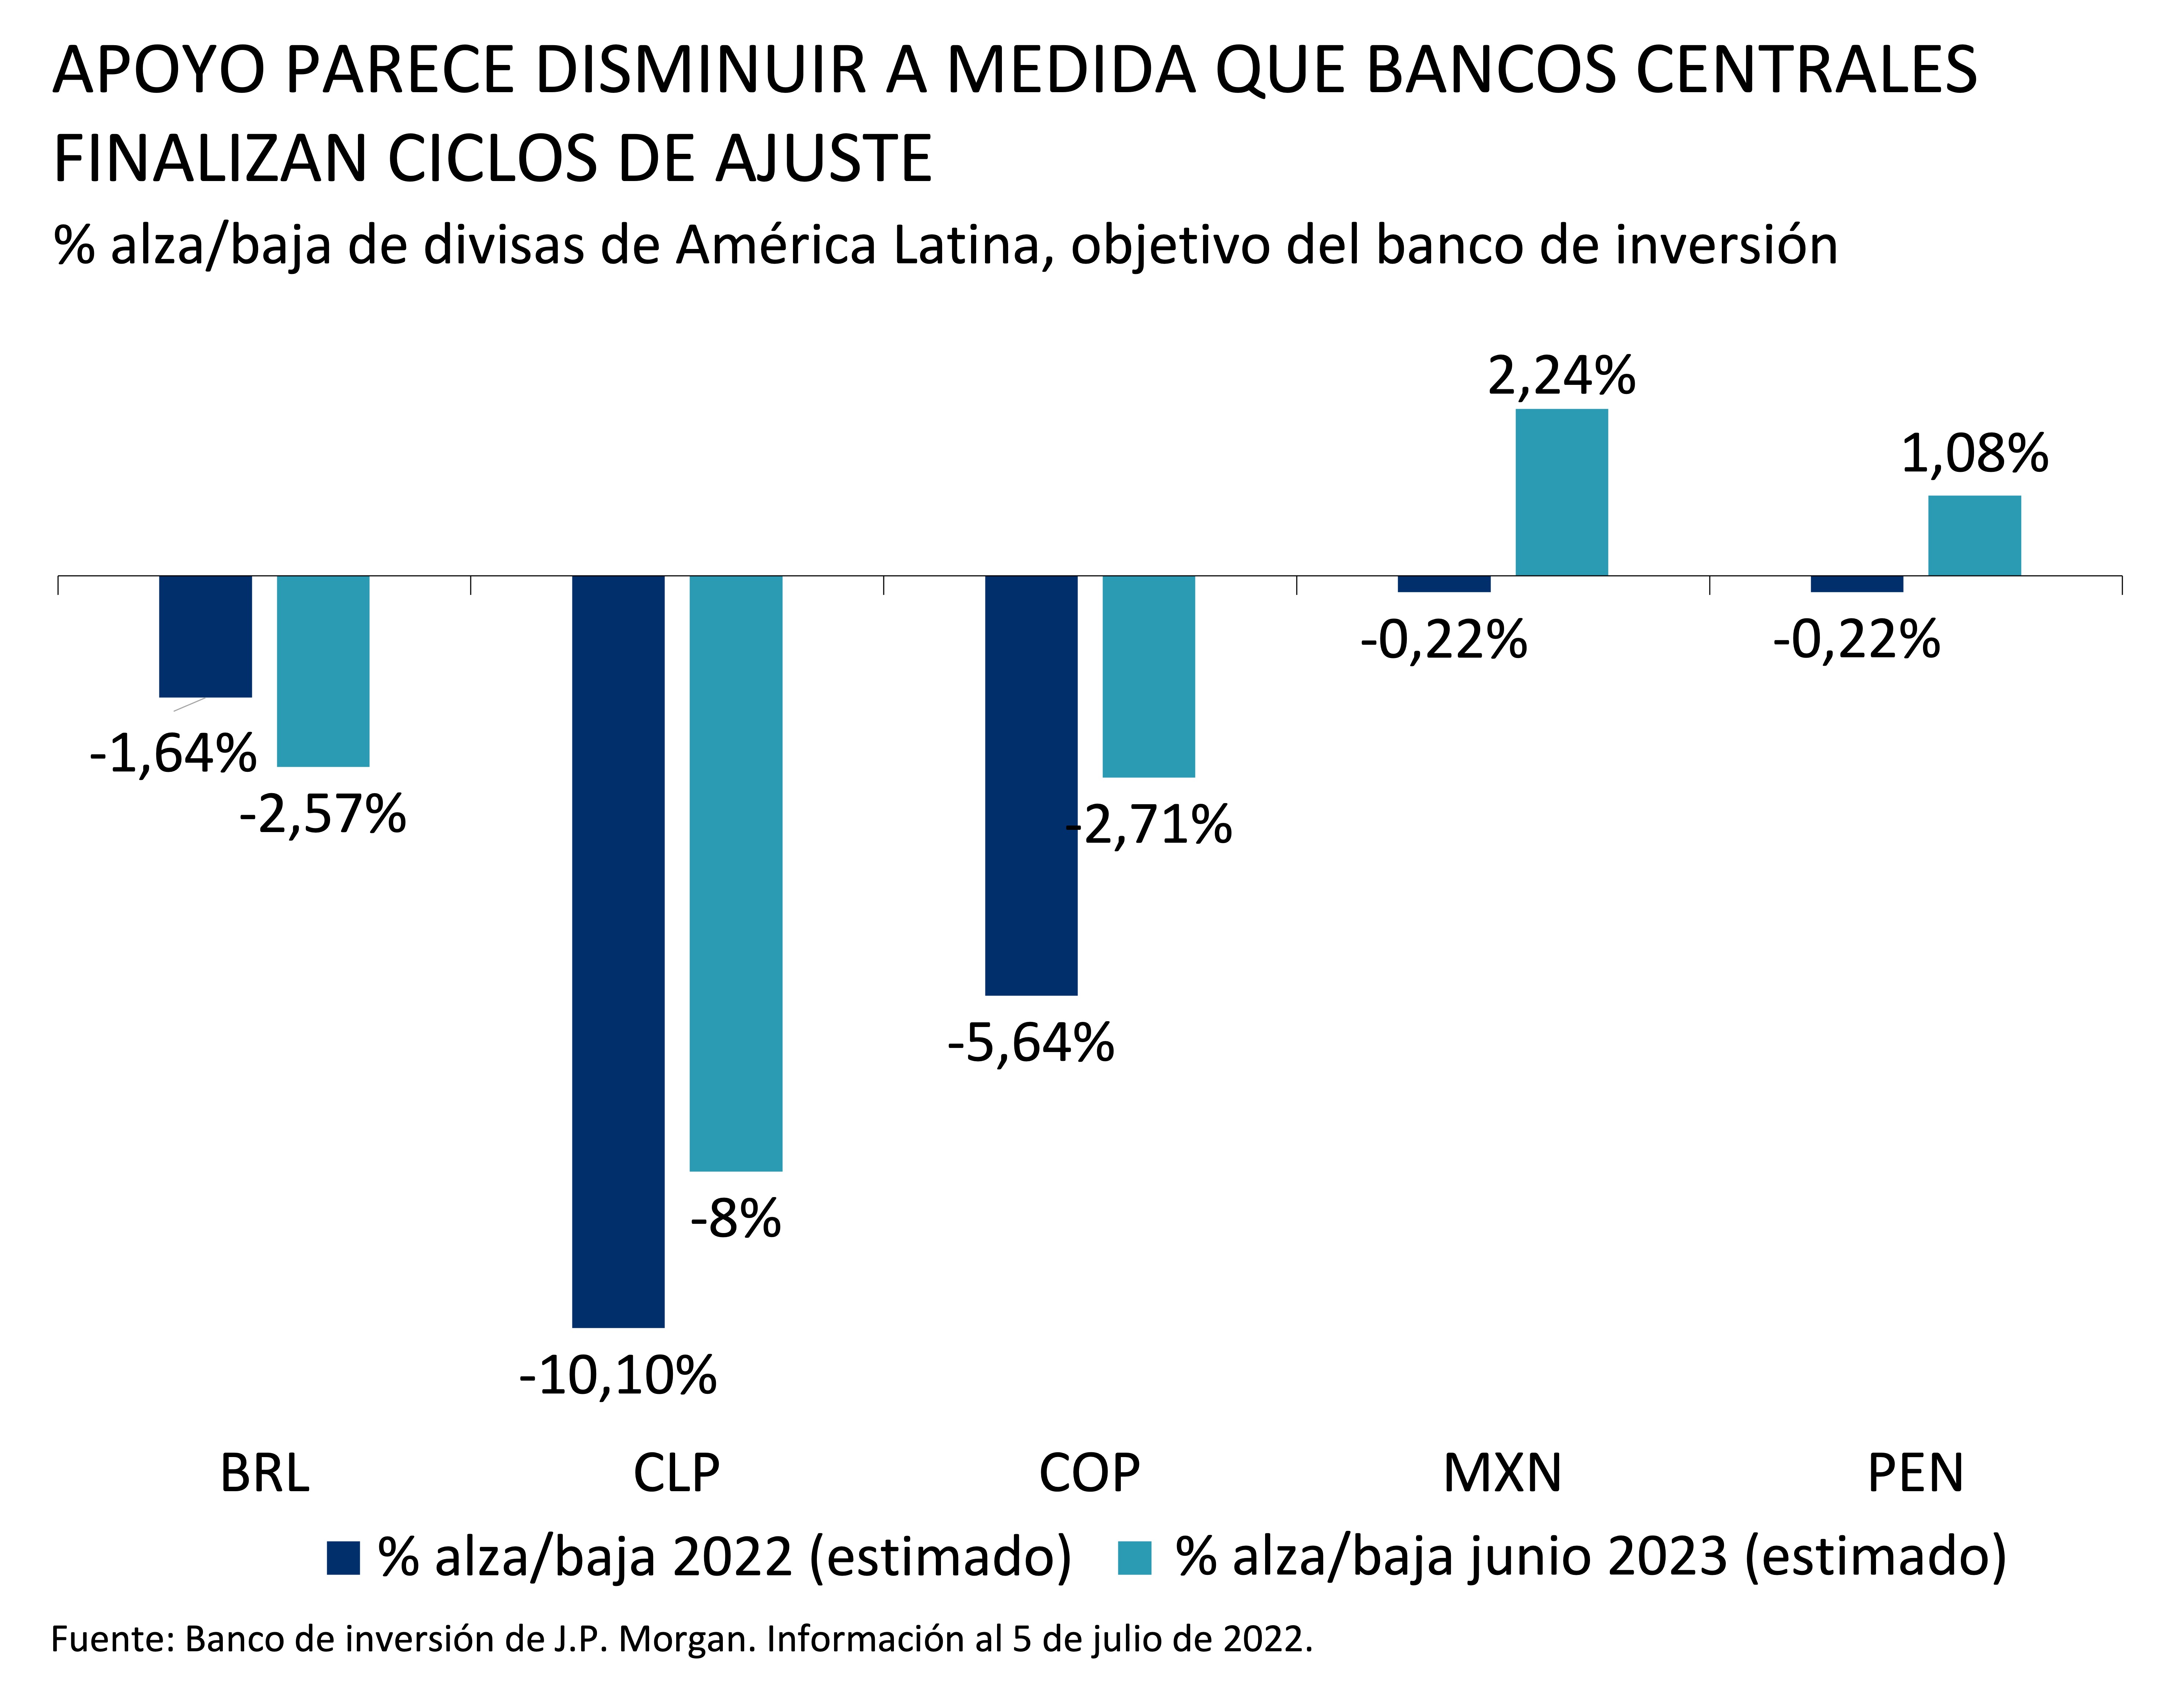 Este gráfico muestra el porcentaje al alza/baja de las divisas de América Latina respecto al objetivo del banco de inversión de JPMorgan para 2022 y junio de 2023